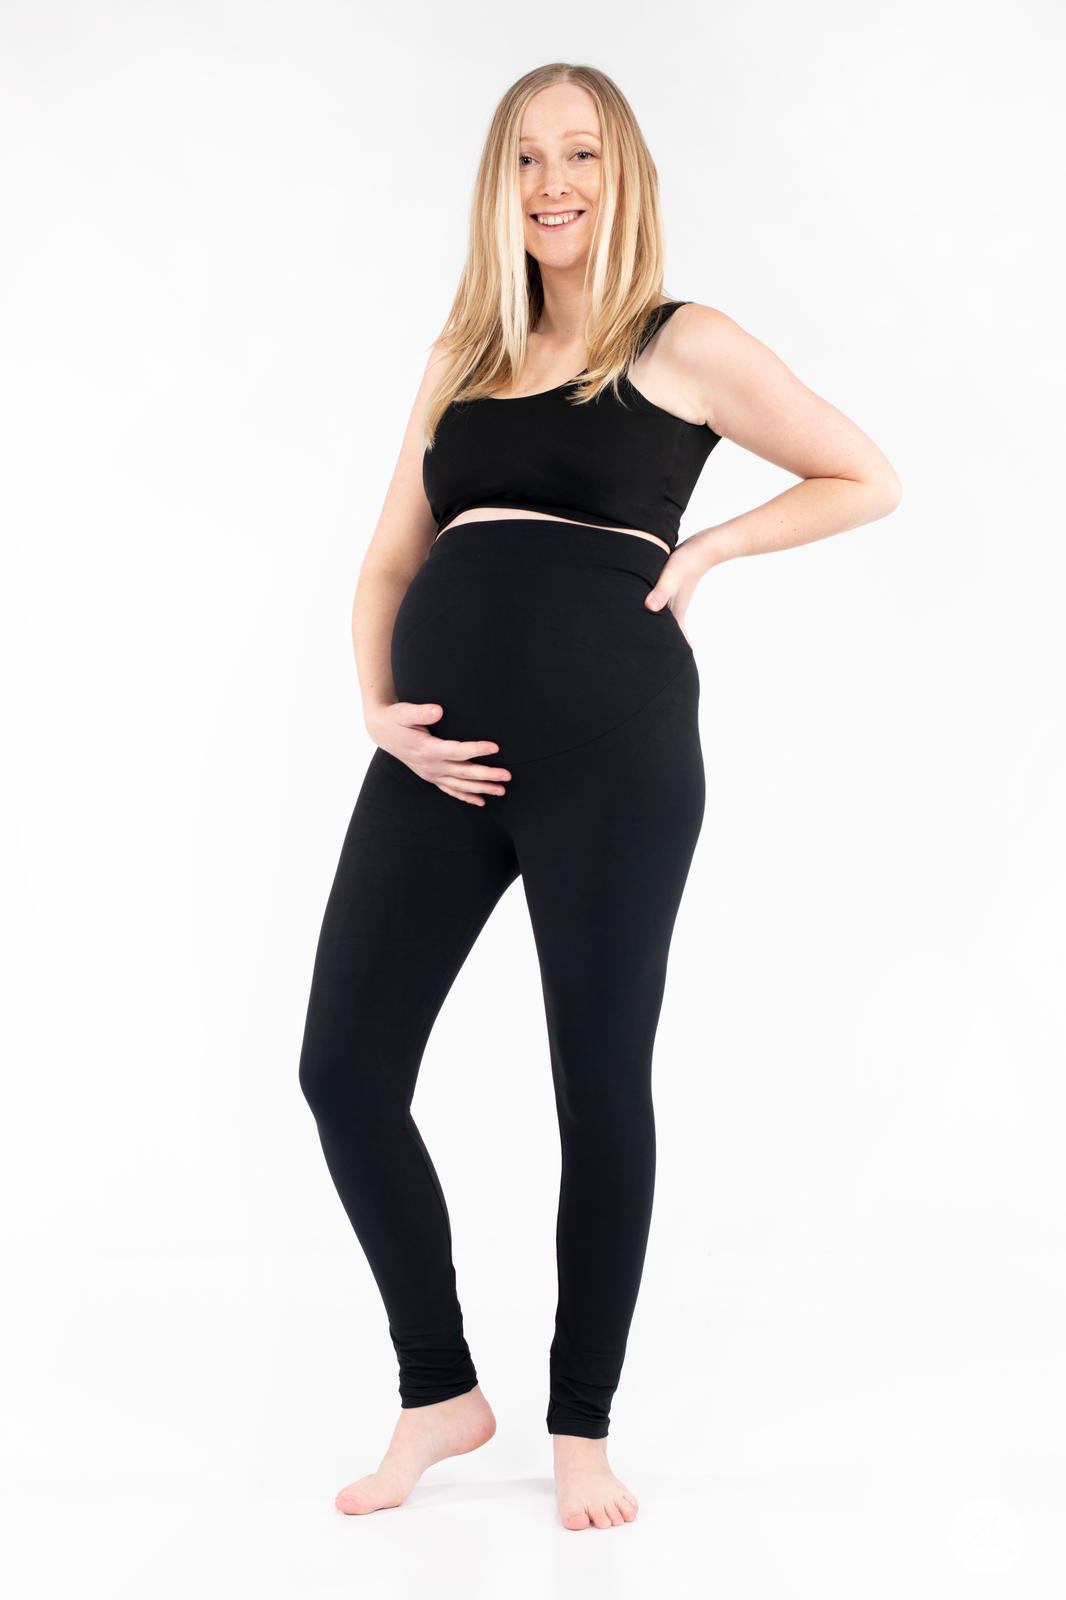 Leggings Depot Women's Maternity Leggings Over The Belly Pregnancy